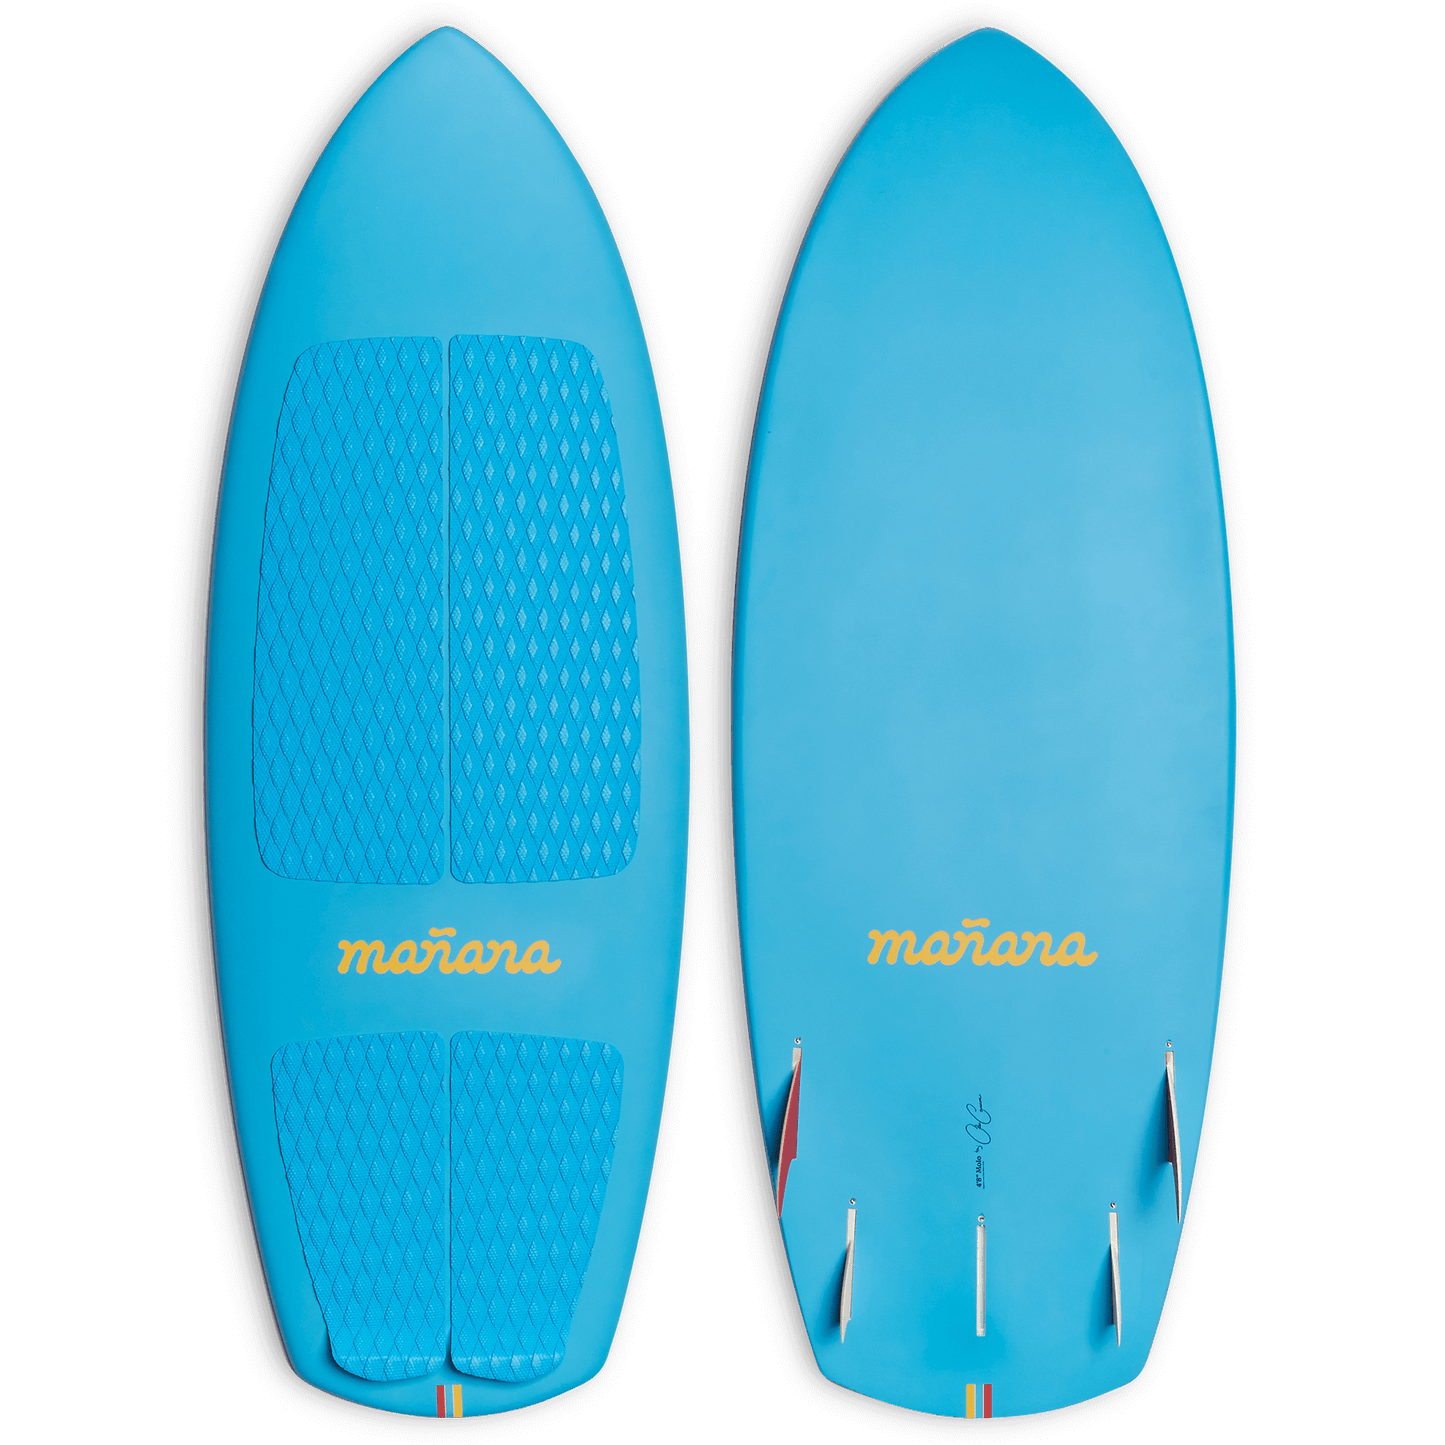 Molo with Manana branding - Ocean Blue